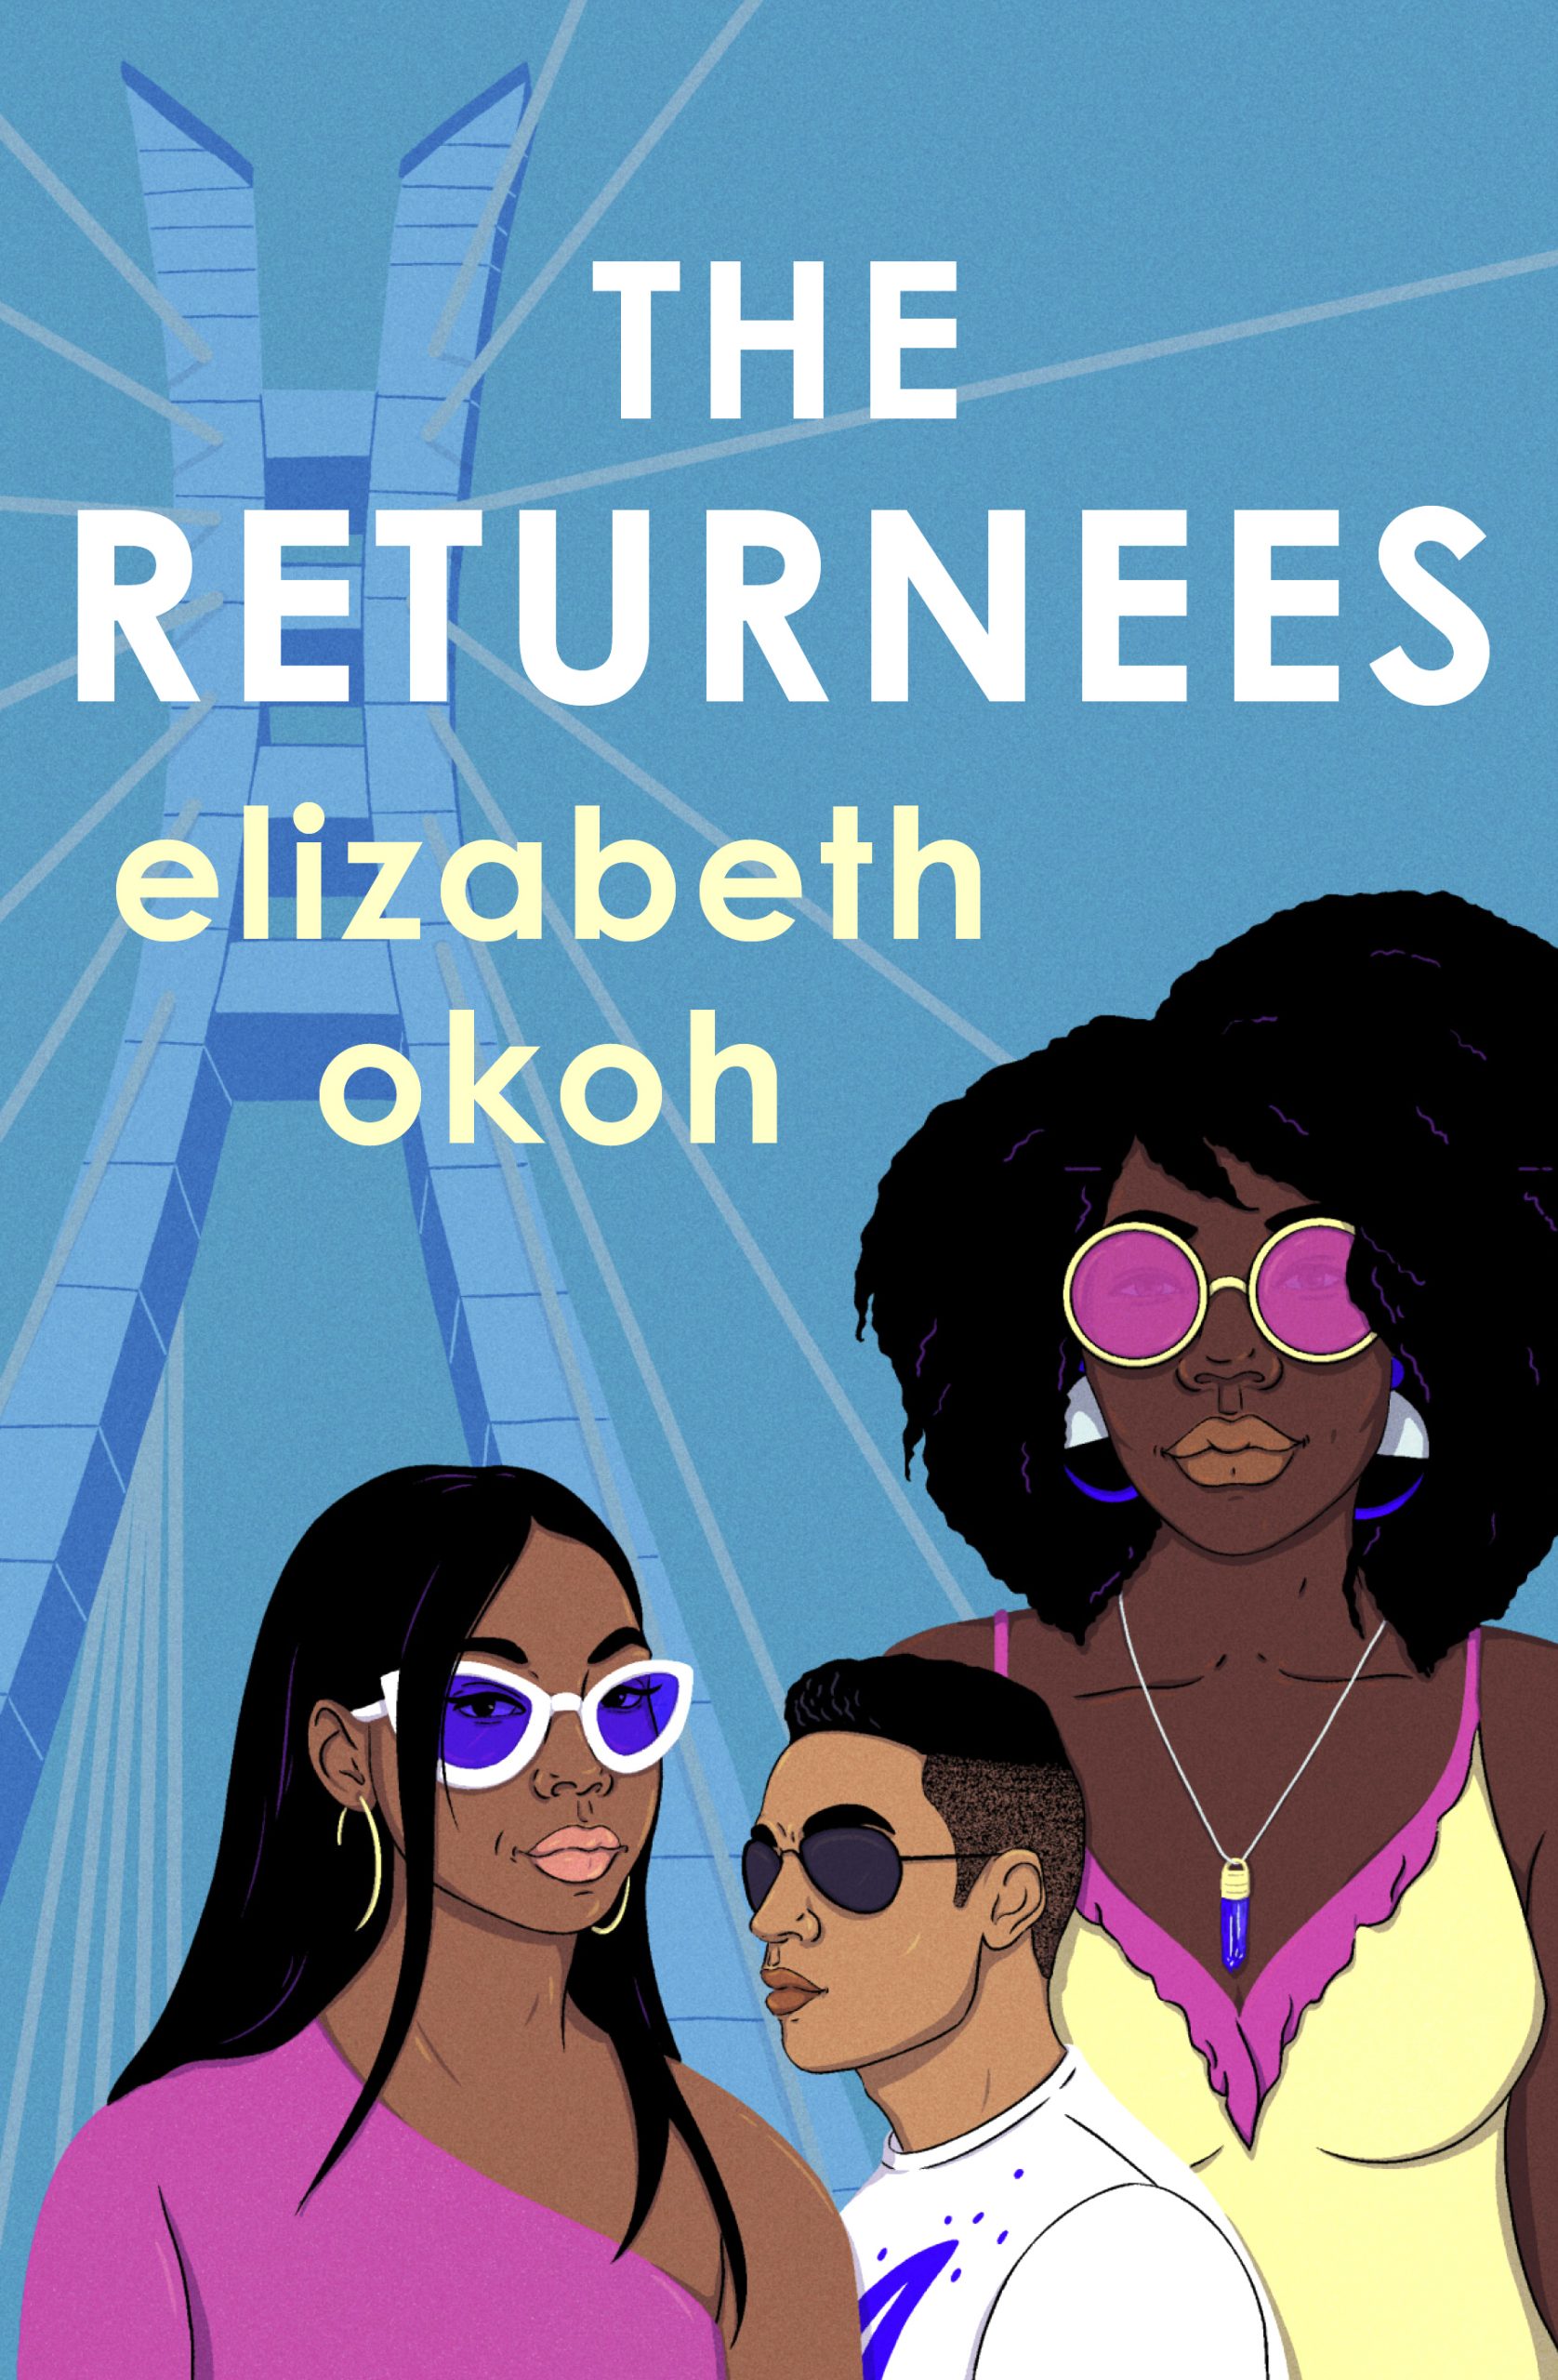 The Returnees novel